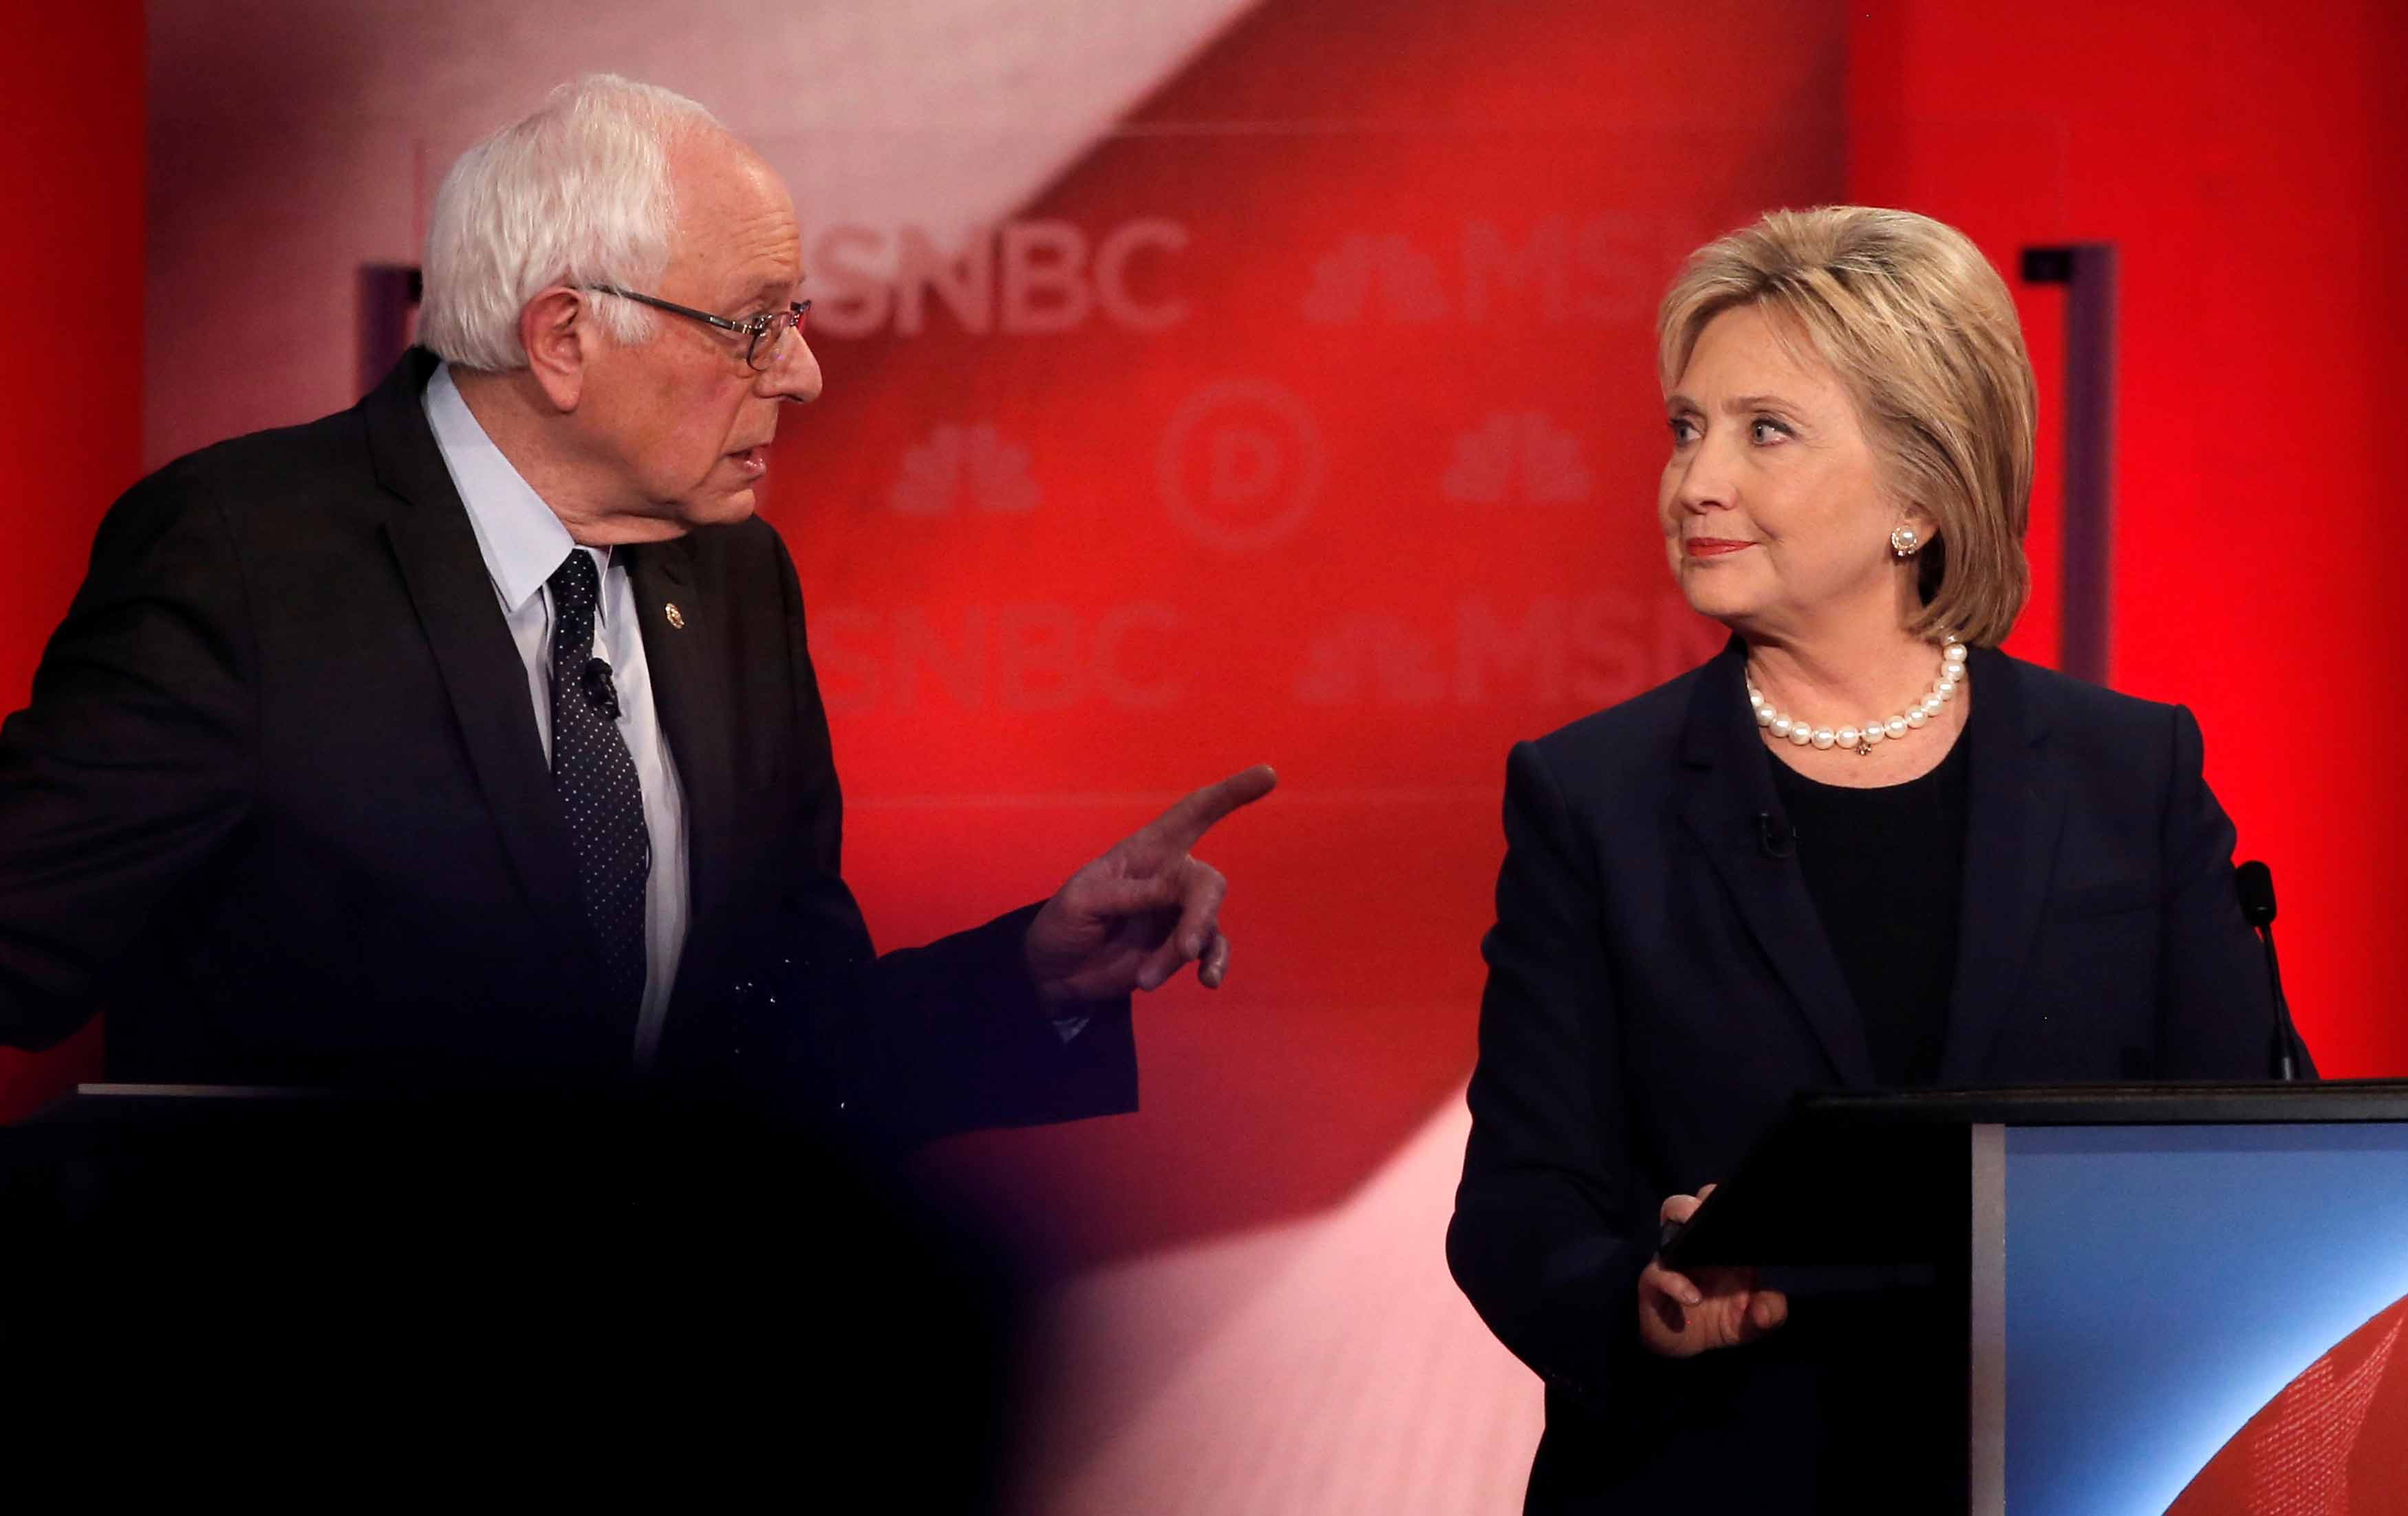 Sanders and Clinton in 2016 presidential debate